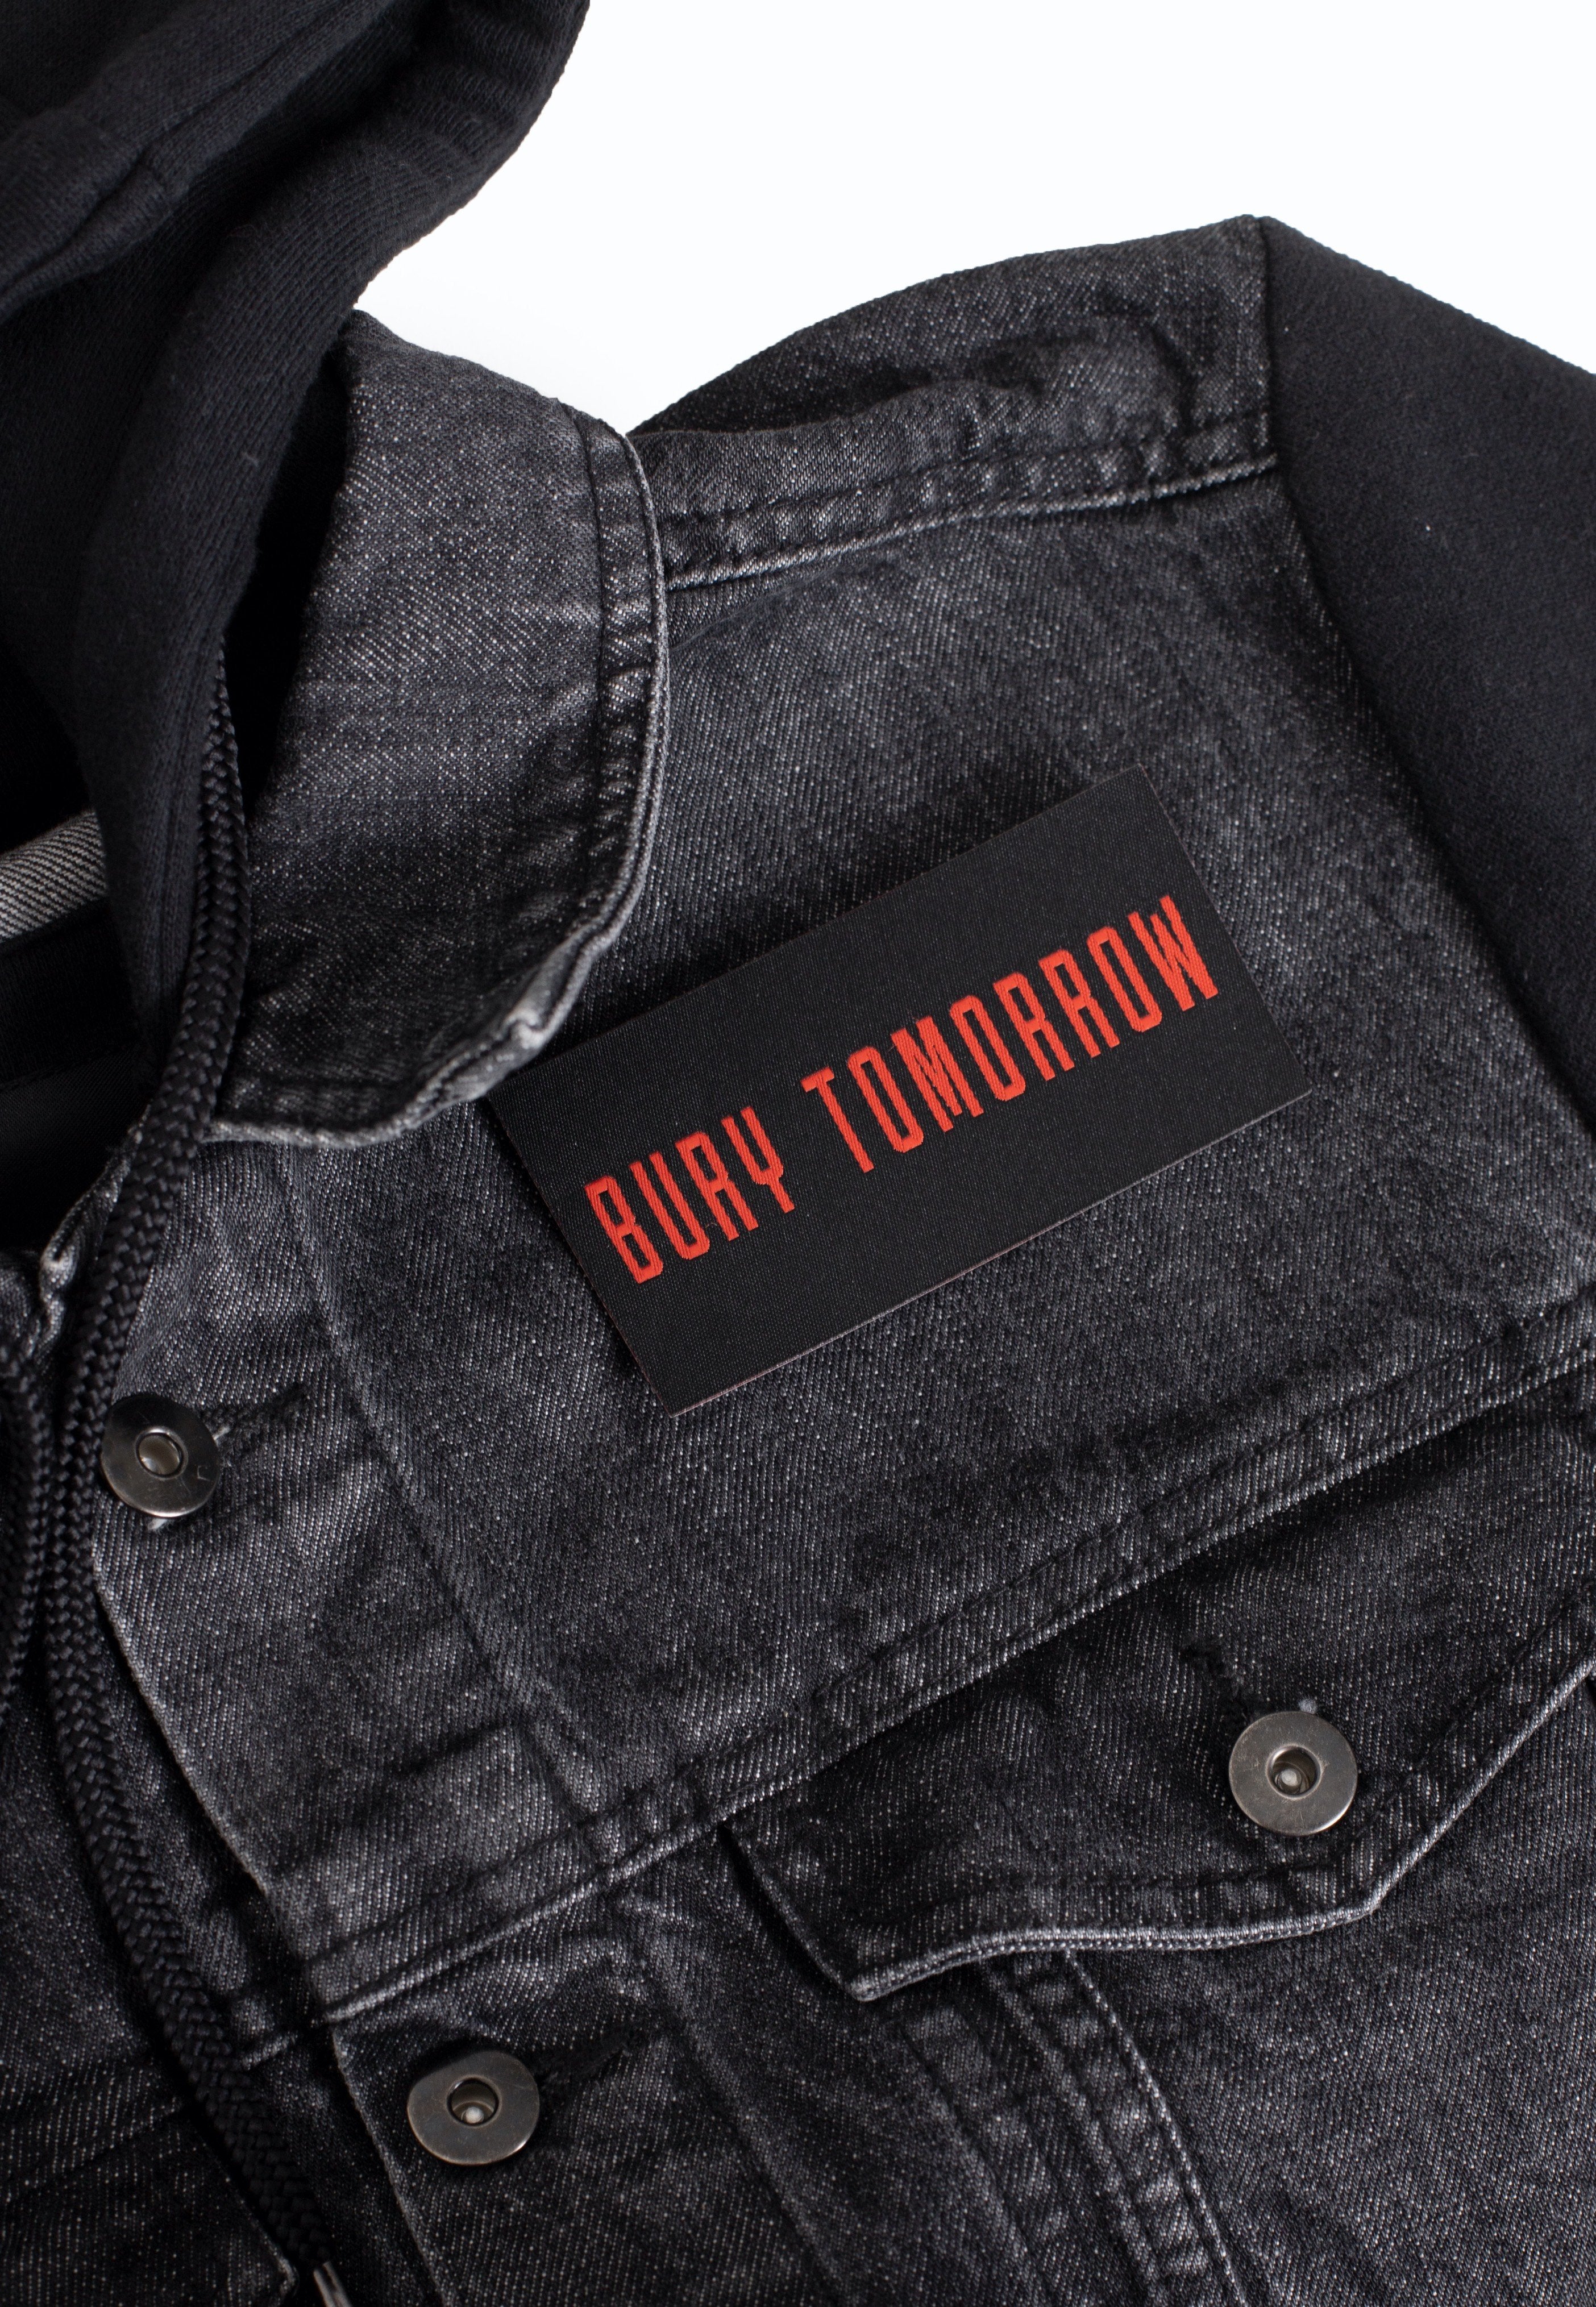 Bury Tomorrow - Logo - Patch